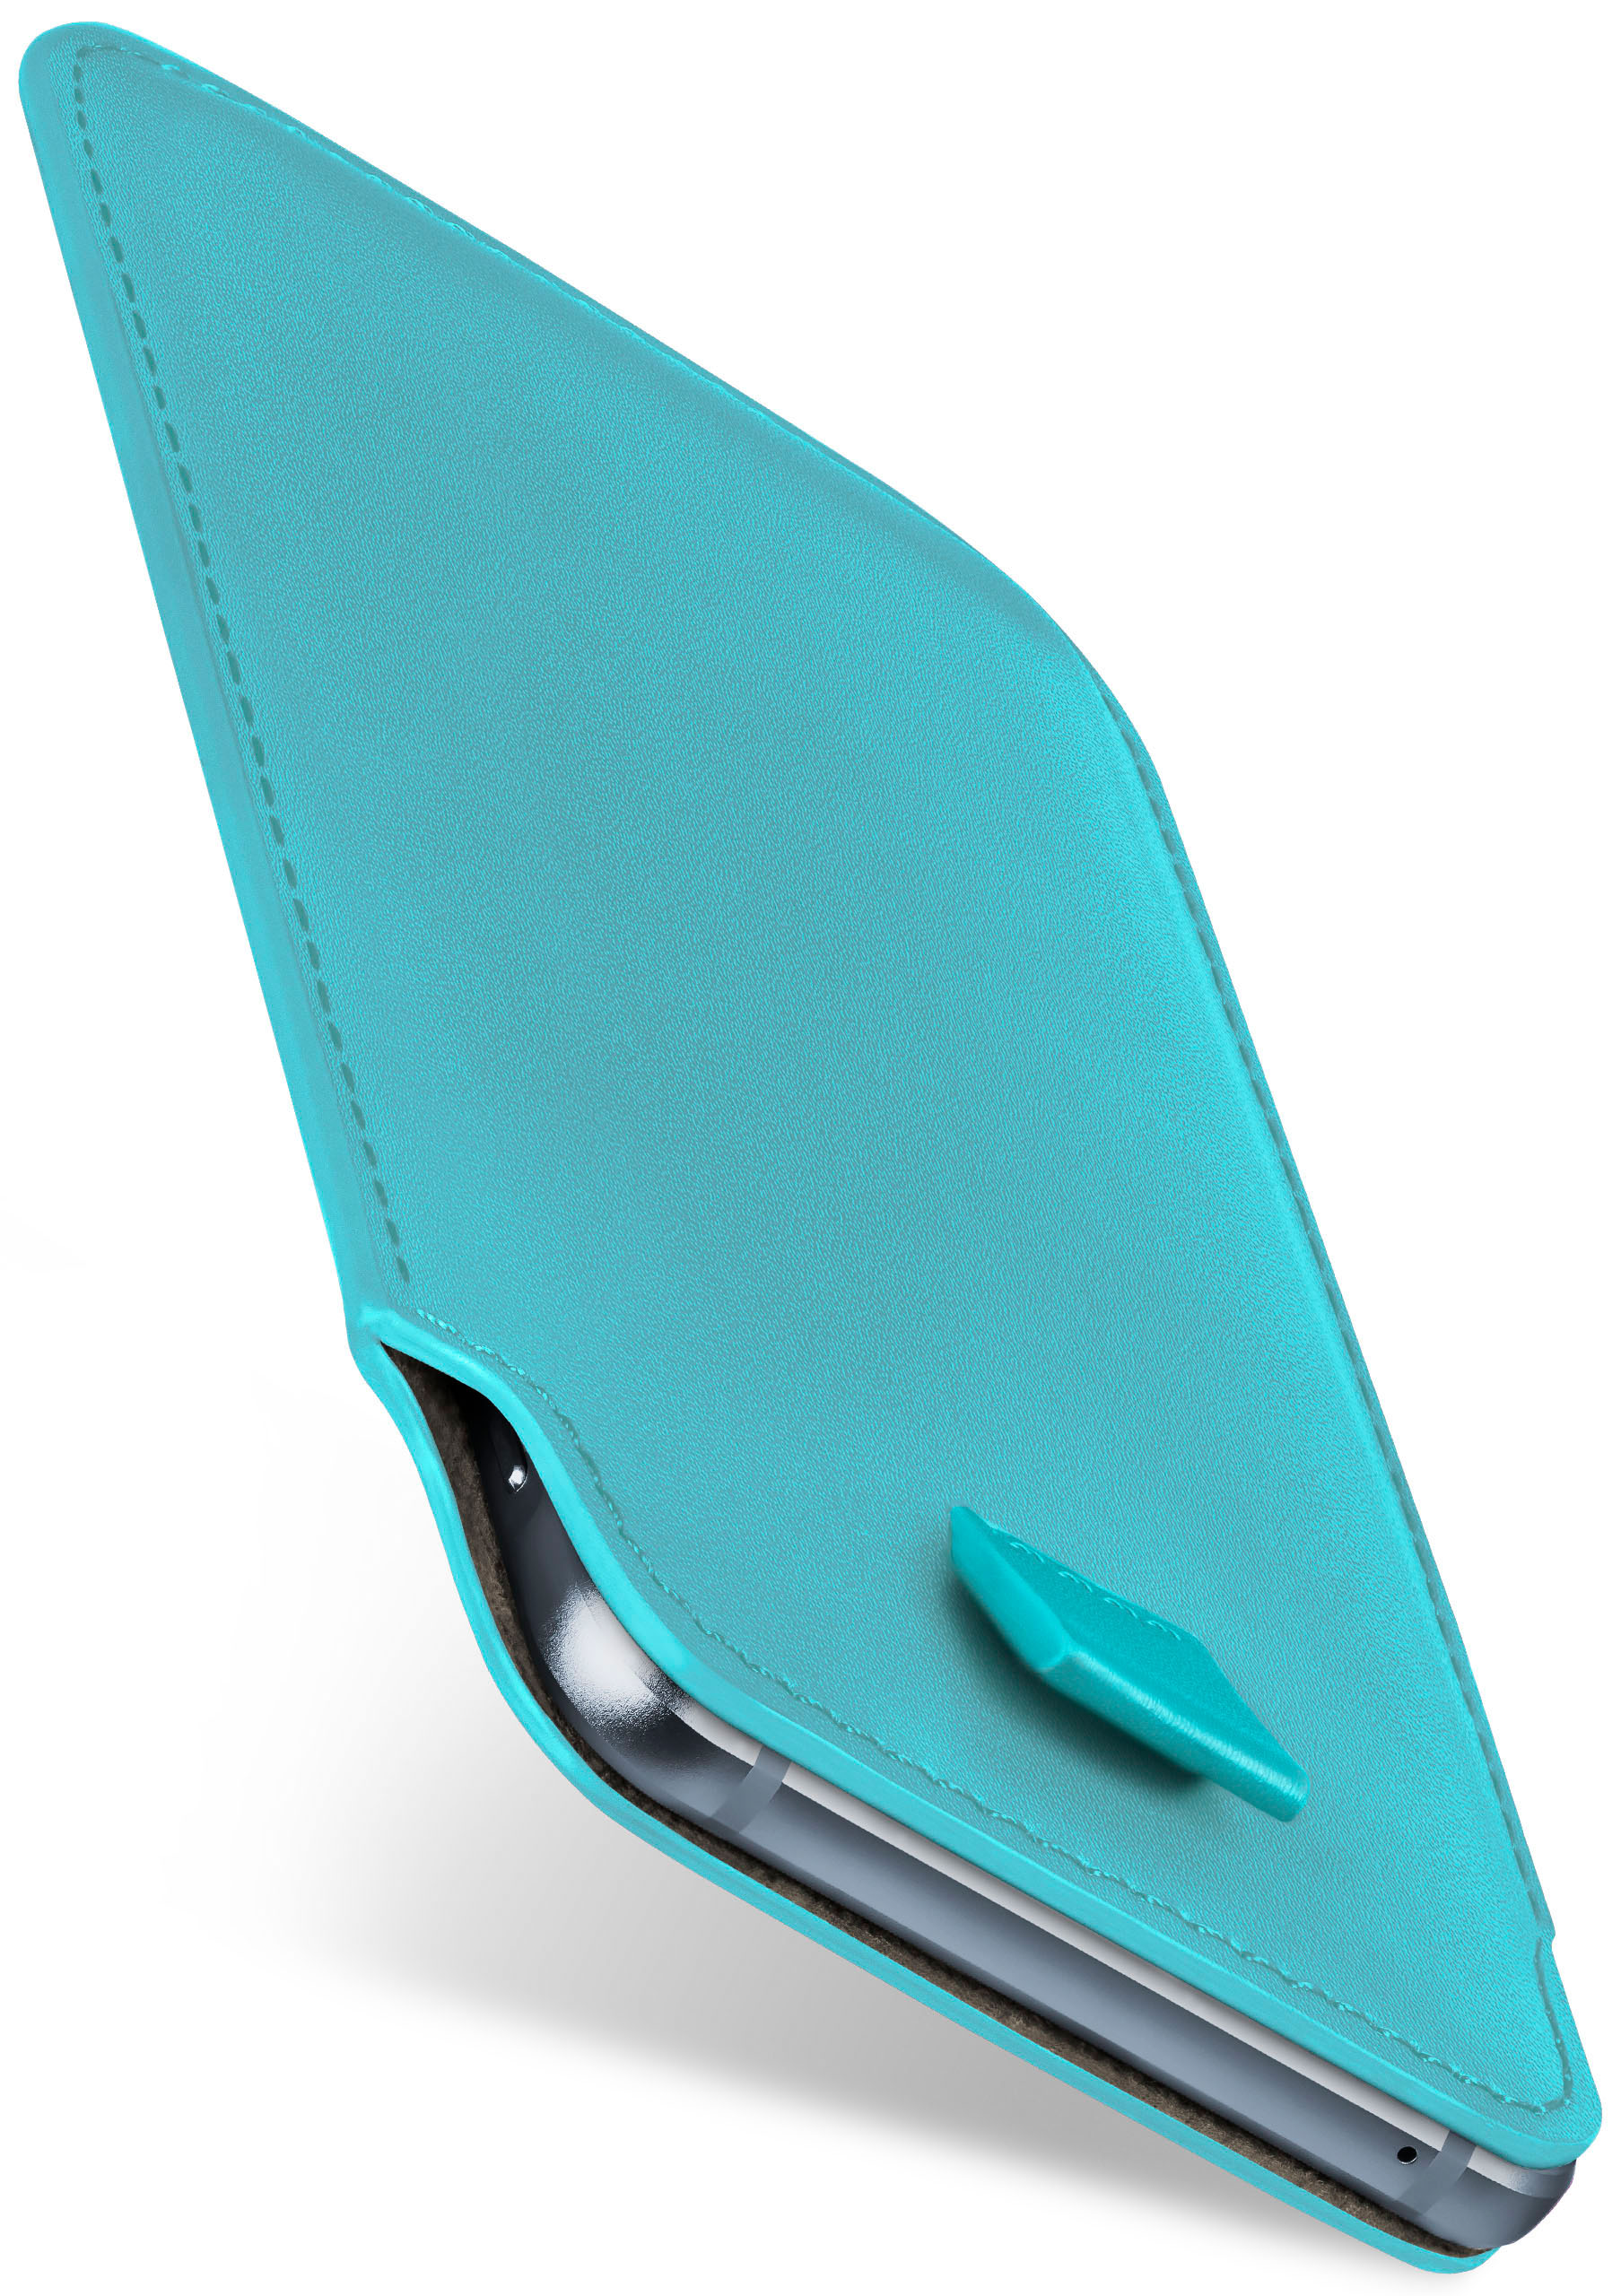 Aqua-Cyan HTC, MOEX U11, Full Case, Cover, Slide